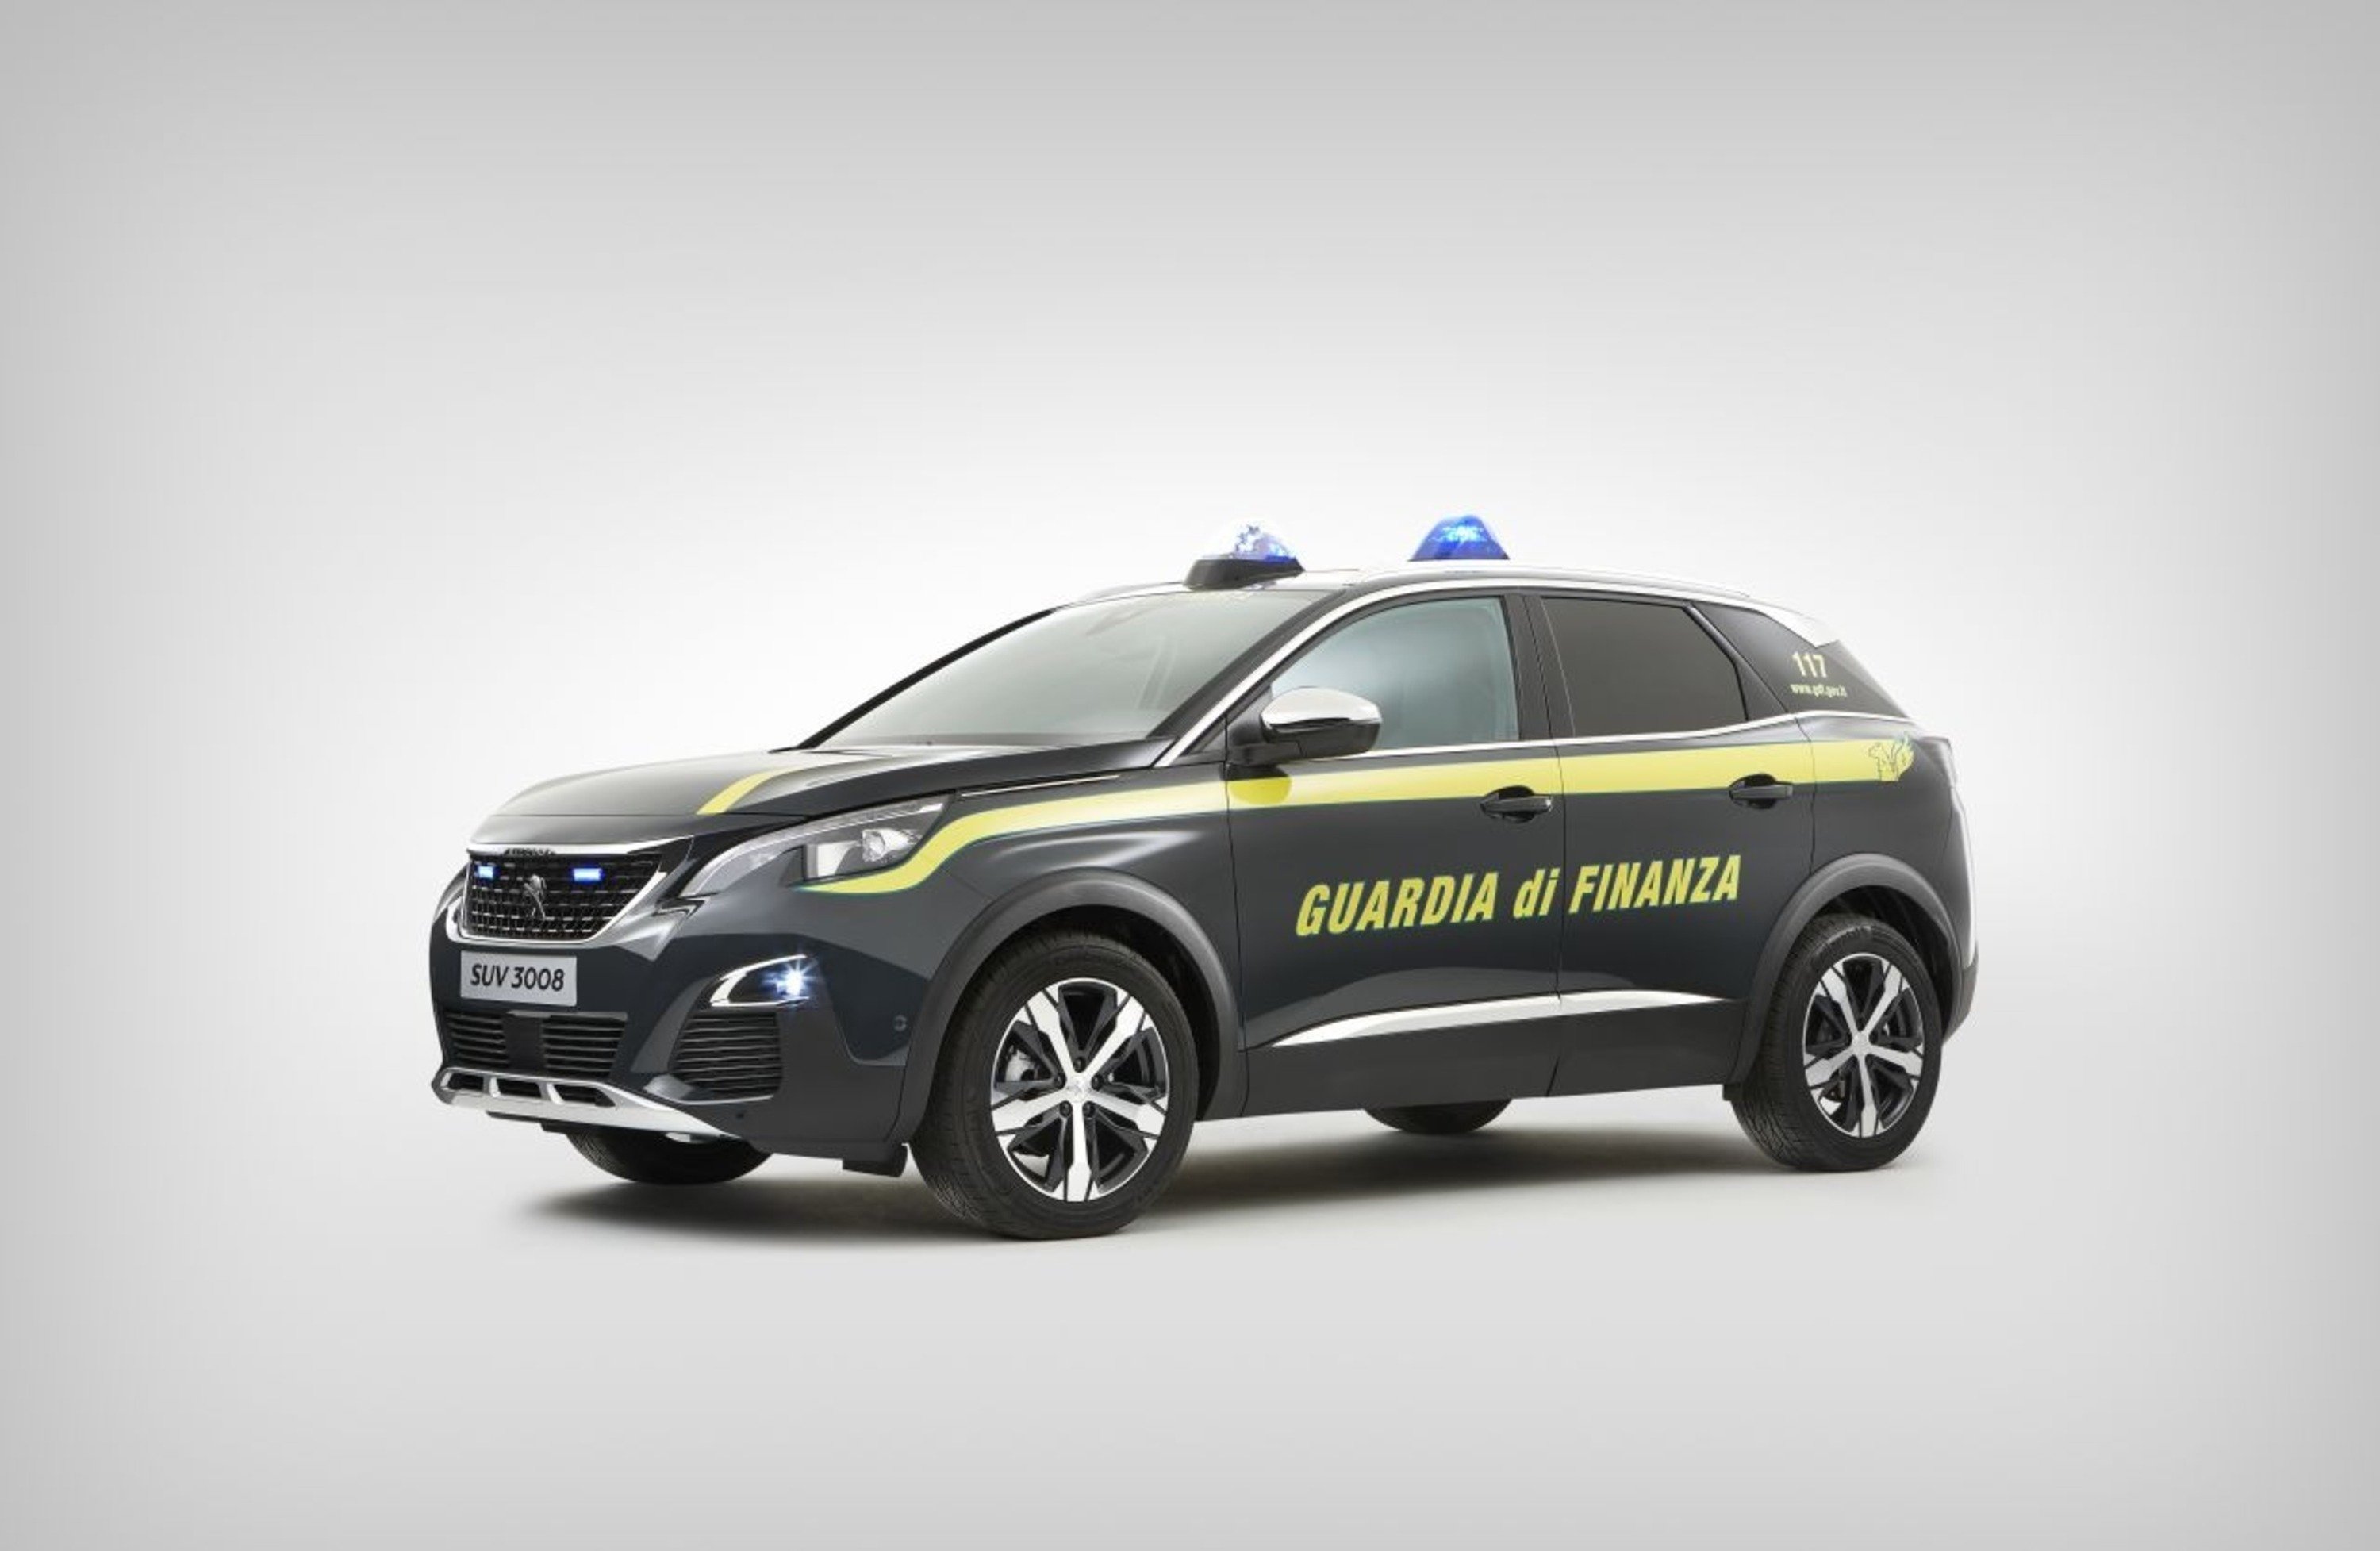 La Guardia di Finanza riceve due Peugeot 3008